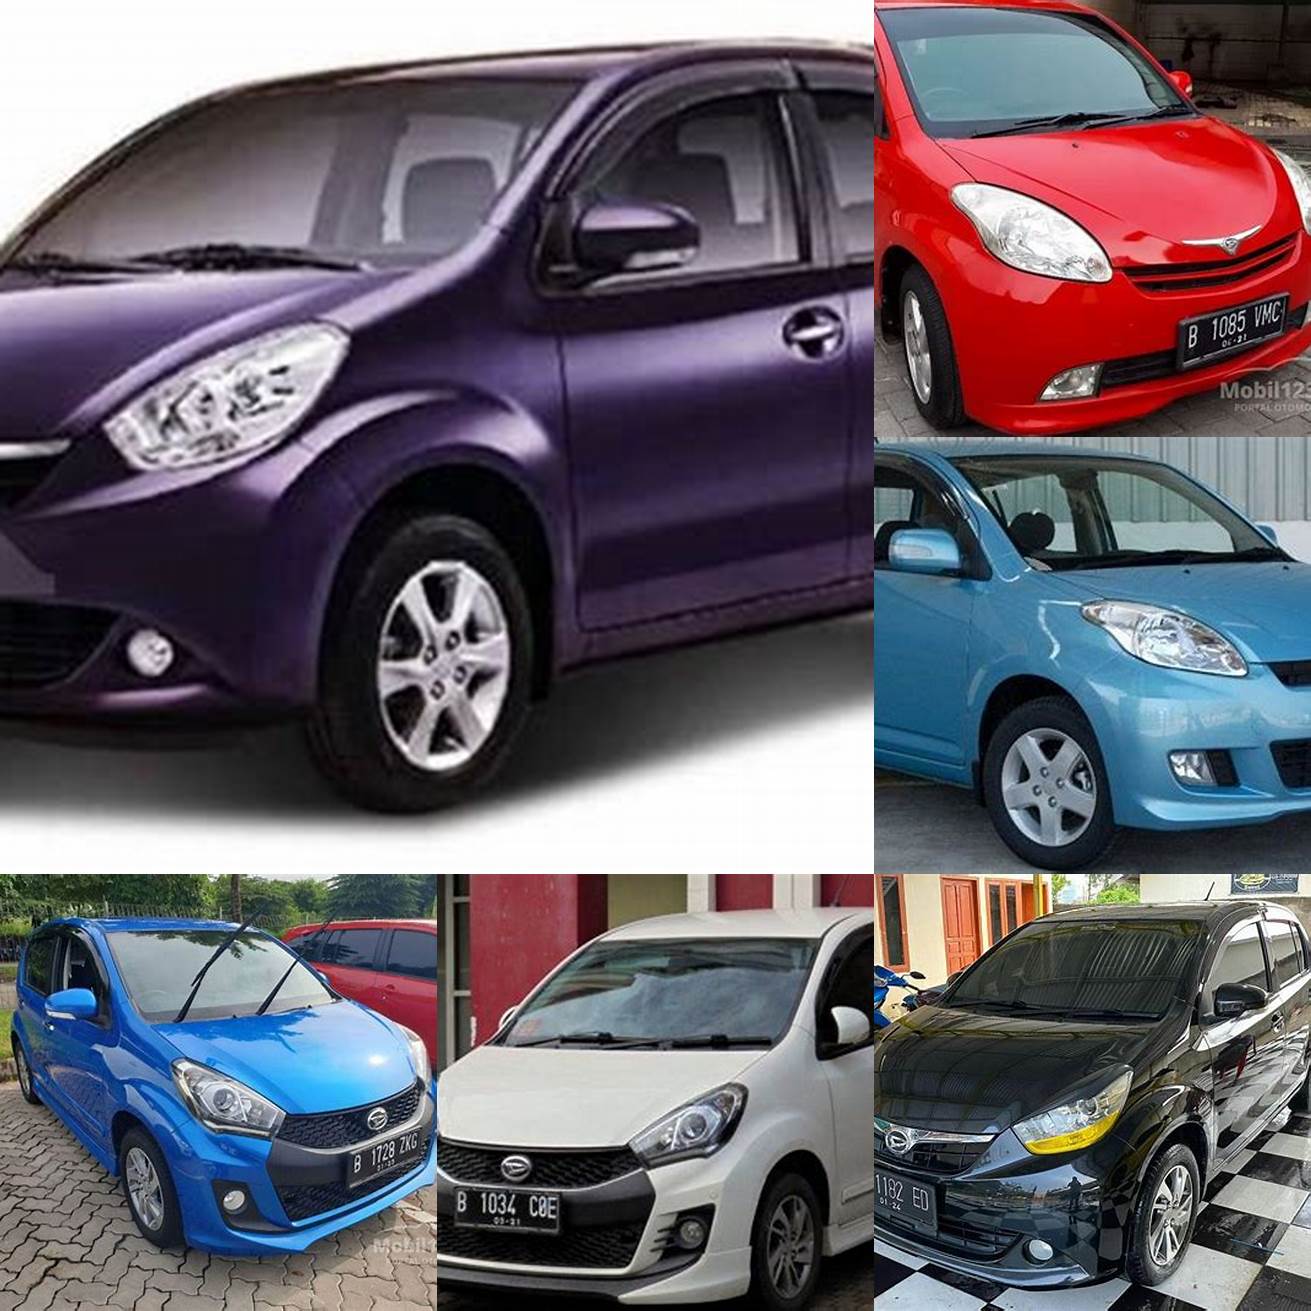 Harga mobil Sirion bekas tahun 2008 - 2010 berkisar antara 60 - 90 juta rupiah